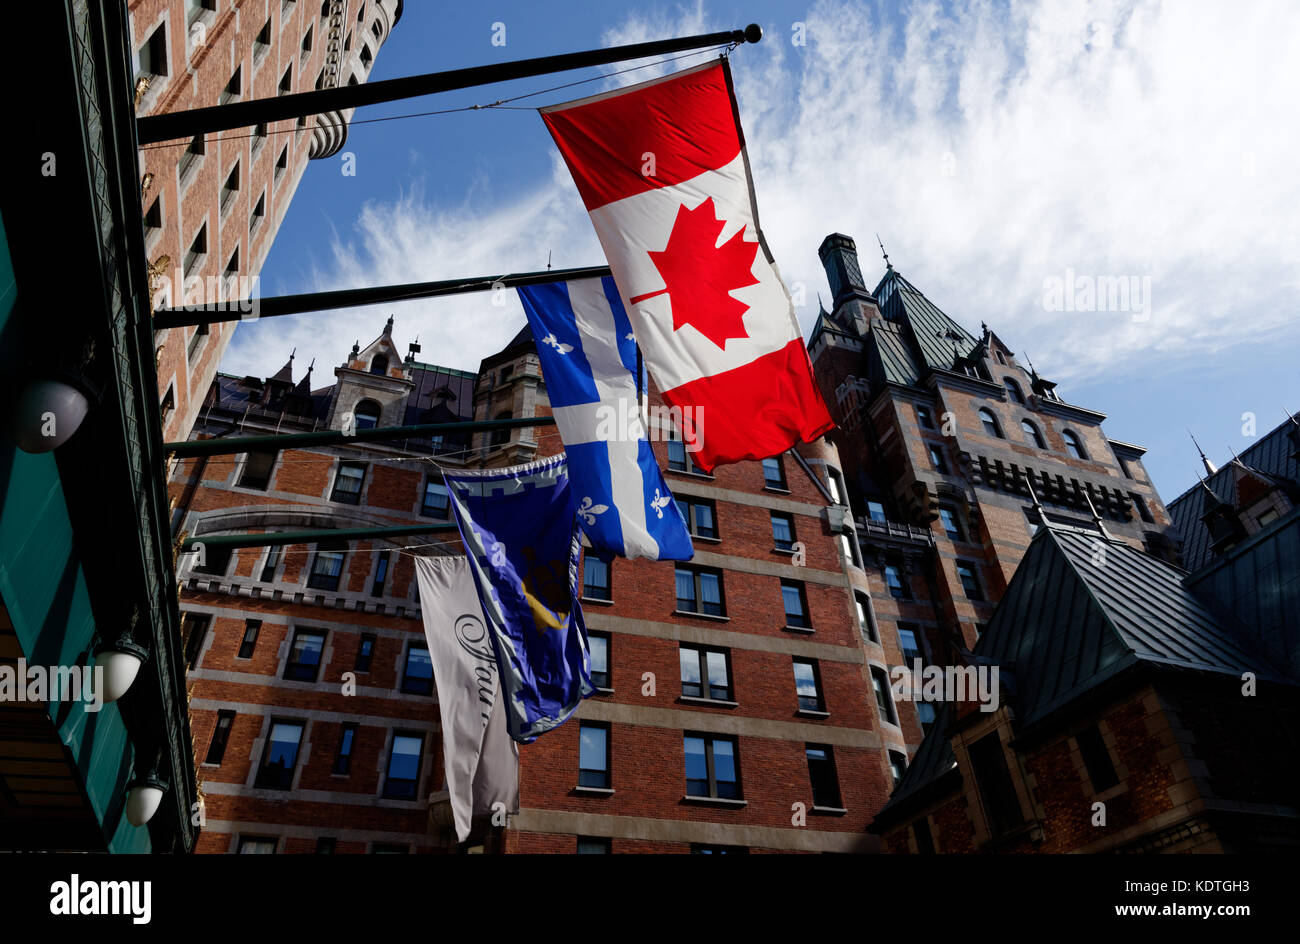 Drapeau du Québec (Fleur de Lys) et le drapeau du Canada (Maple Leaf), volant à l'extérieur de l'hôtel Château Frontenac à Québec, Canada Banque D'Images